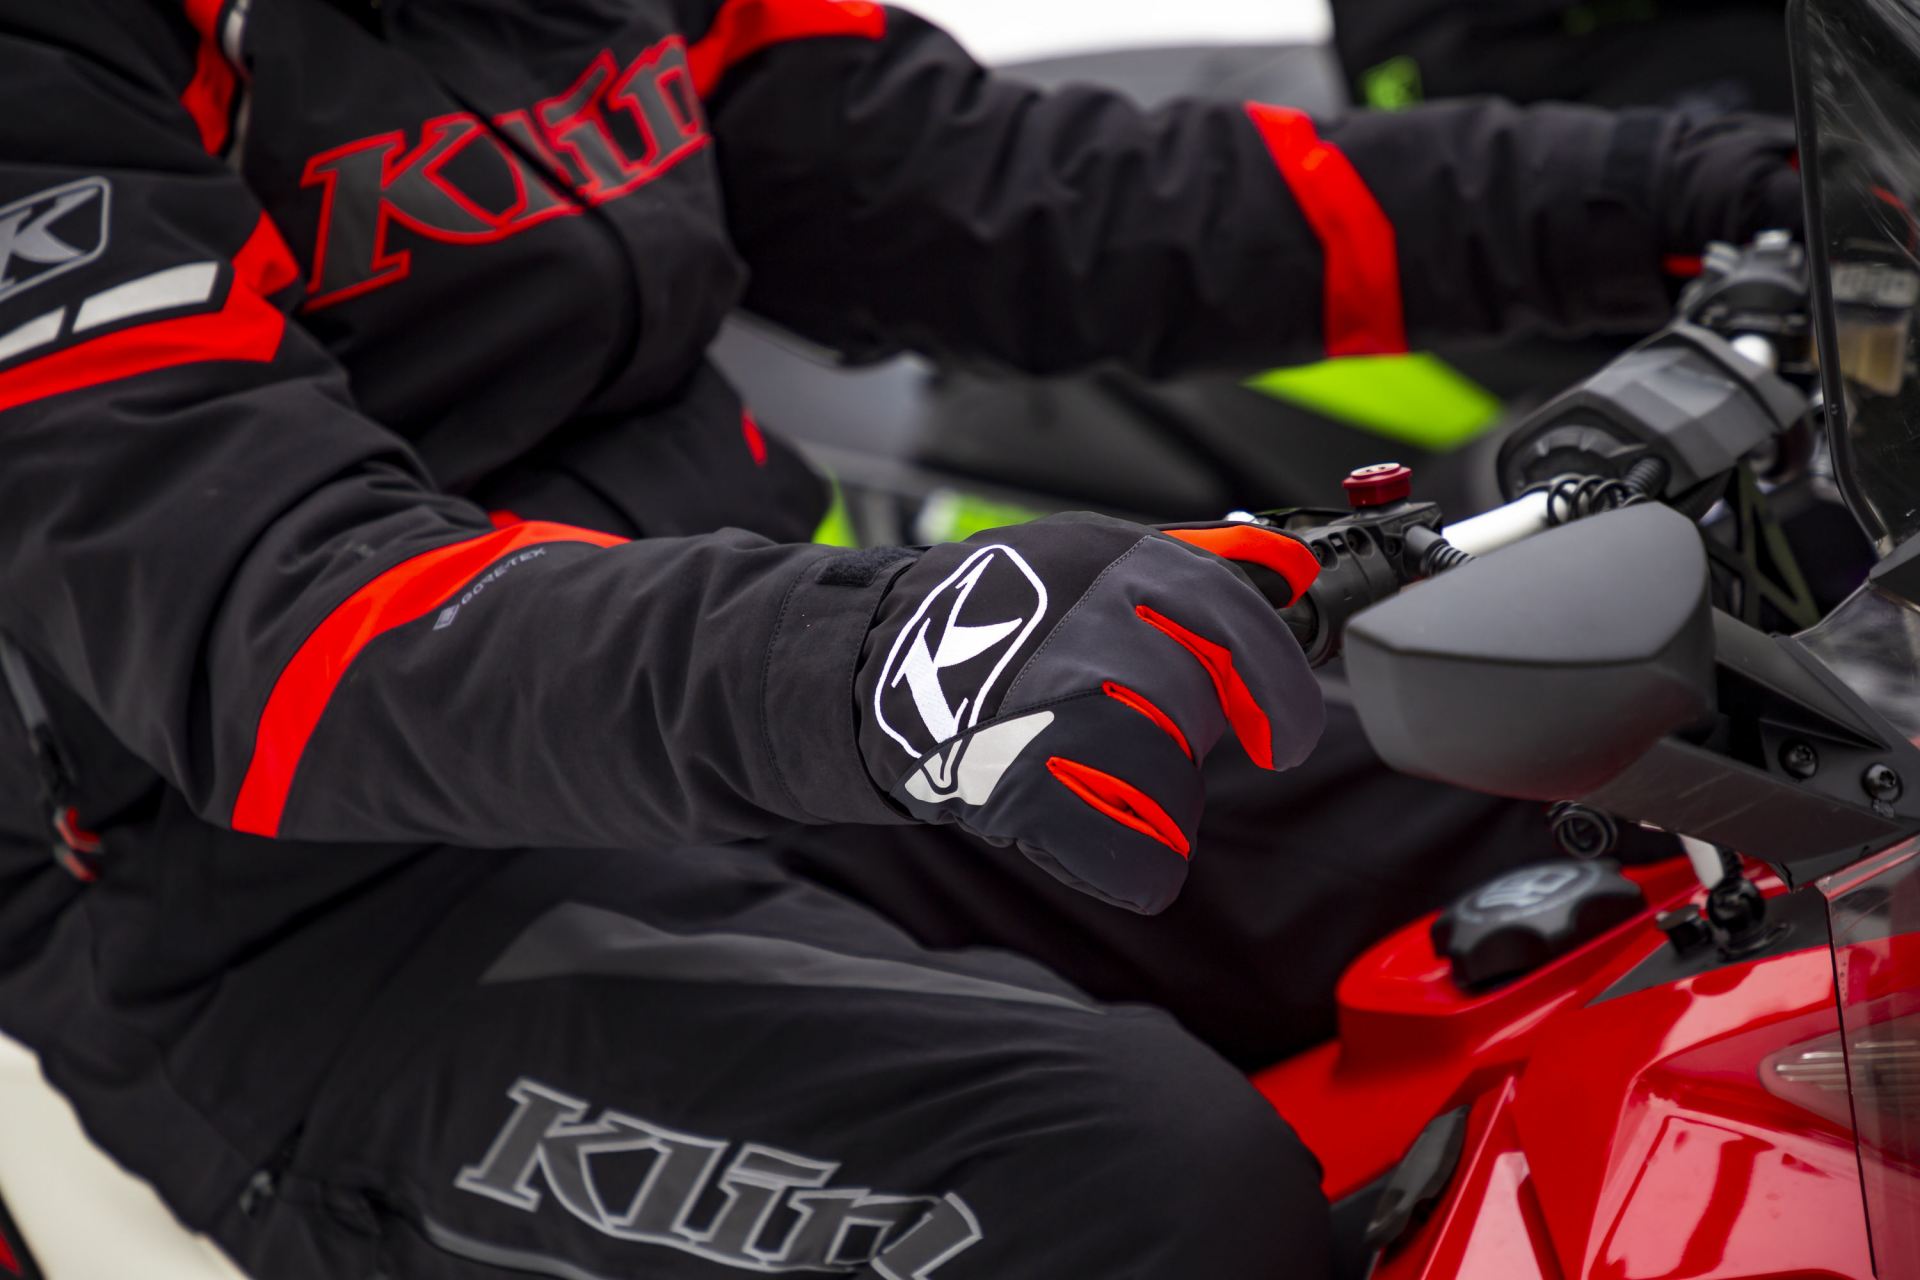 KLIM Motorradbekleidung - Schnee Handschuhe  